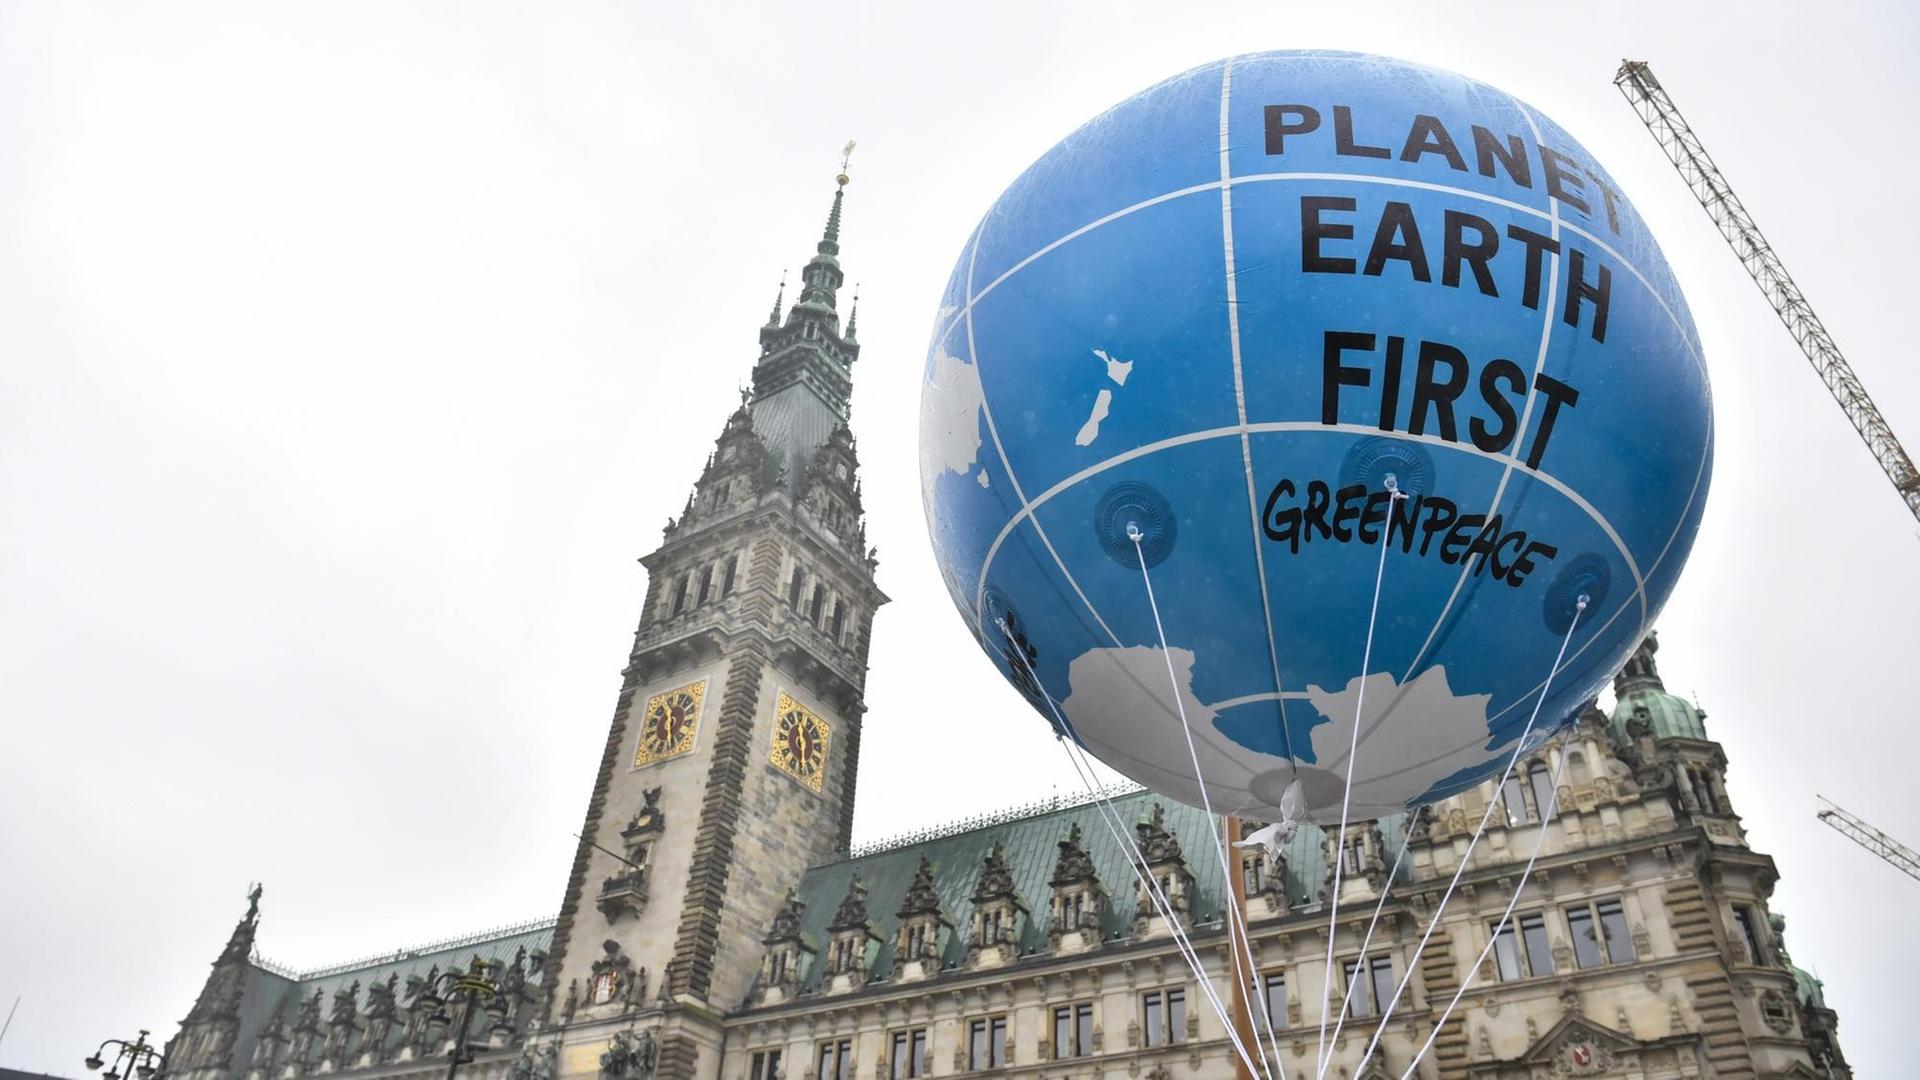 Ein Ballon mit der Aufschrift "Planet Earth First" hängt vor dem Hamburger Rathaus.